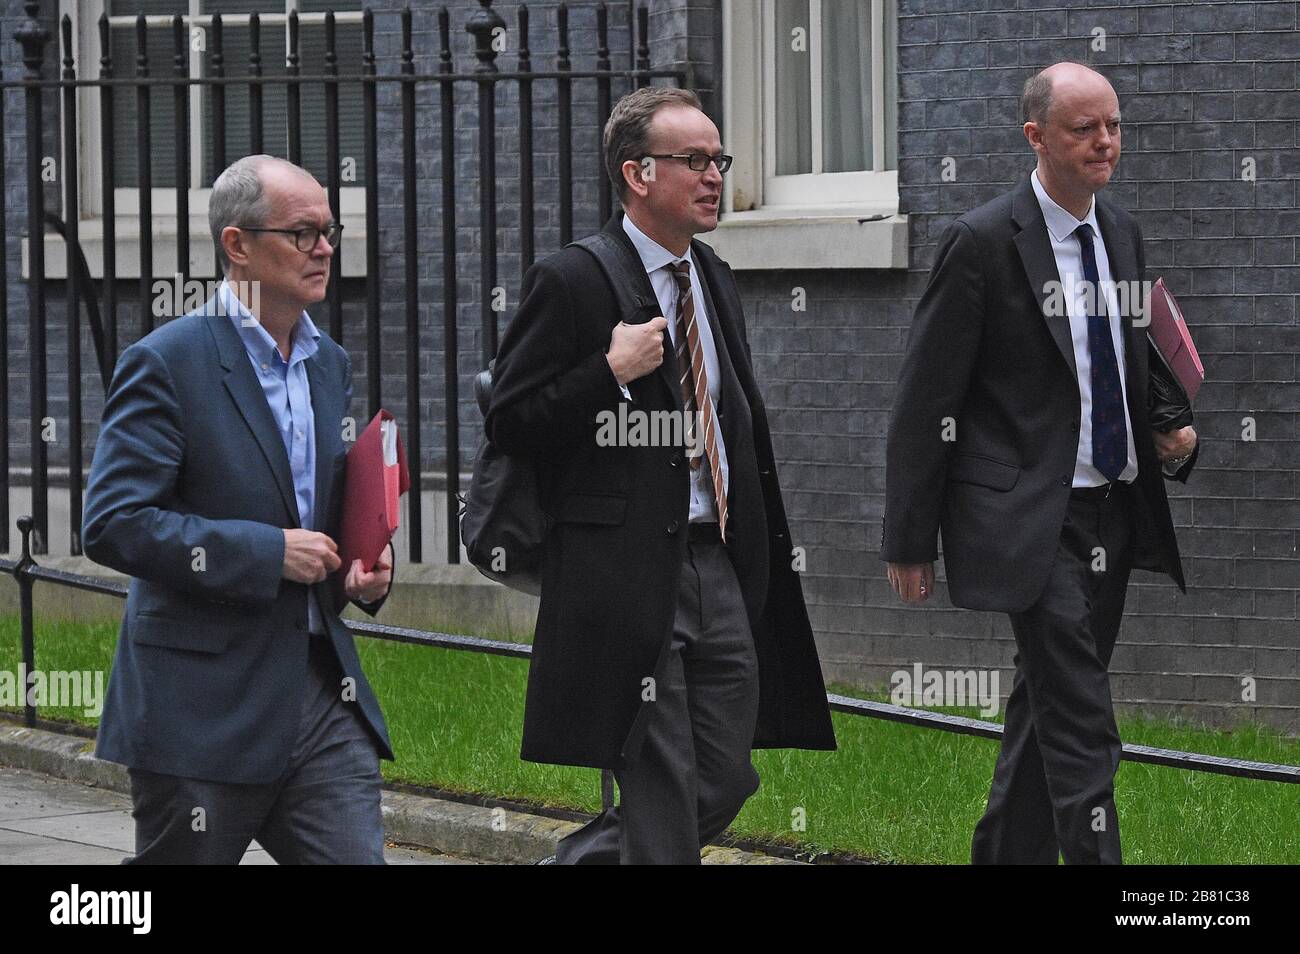 Consigliere scientifico capo Sir Patrick Vallance (a sinistra) e Chief Medical Officer for England Chris Whitty (a destra) lasciare 10 Downing Street, Londra, come il governo si aspetta di pubblicare un'emergenza corronavirus Powers Bill. Foto Stock